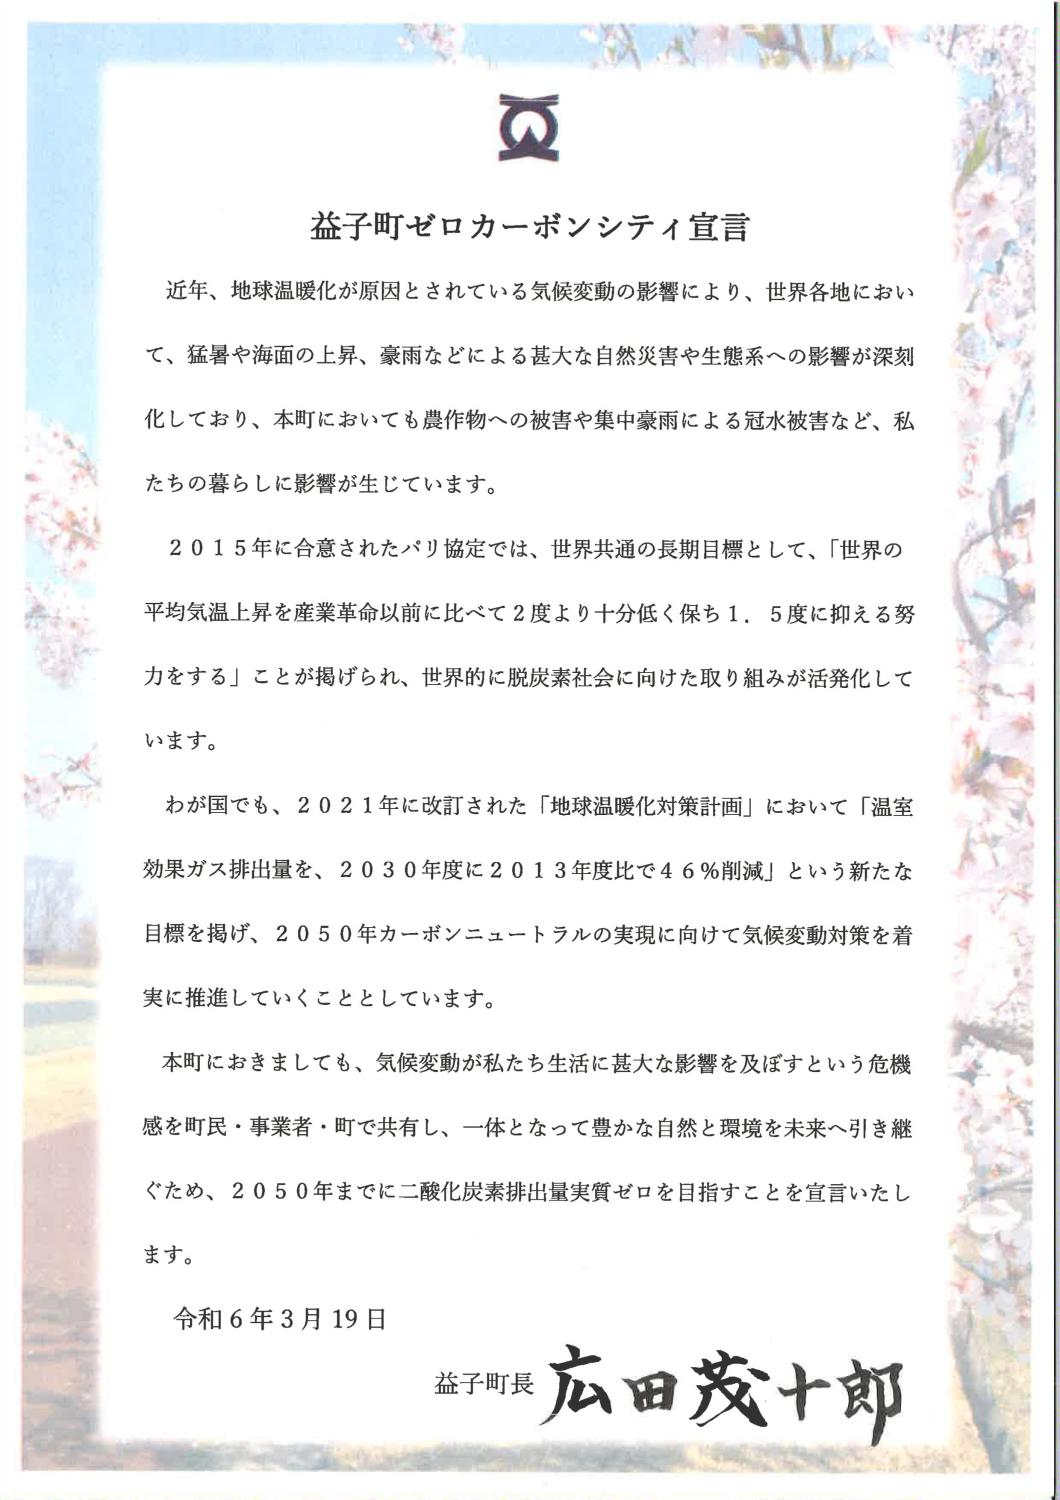 益子町ゼロカーボンシティ宣言